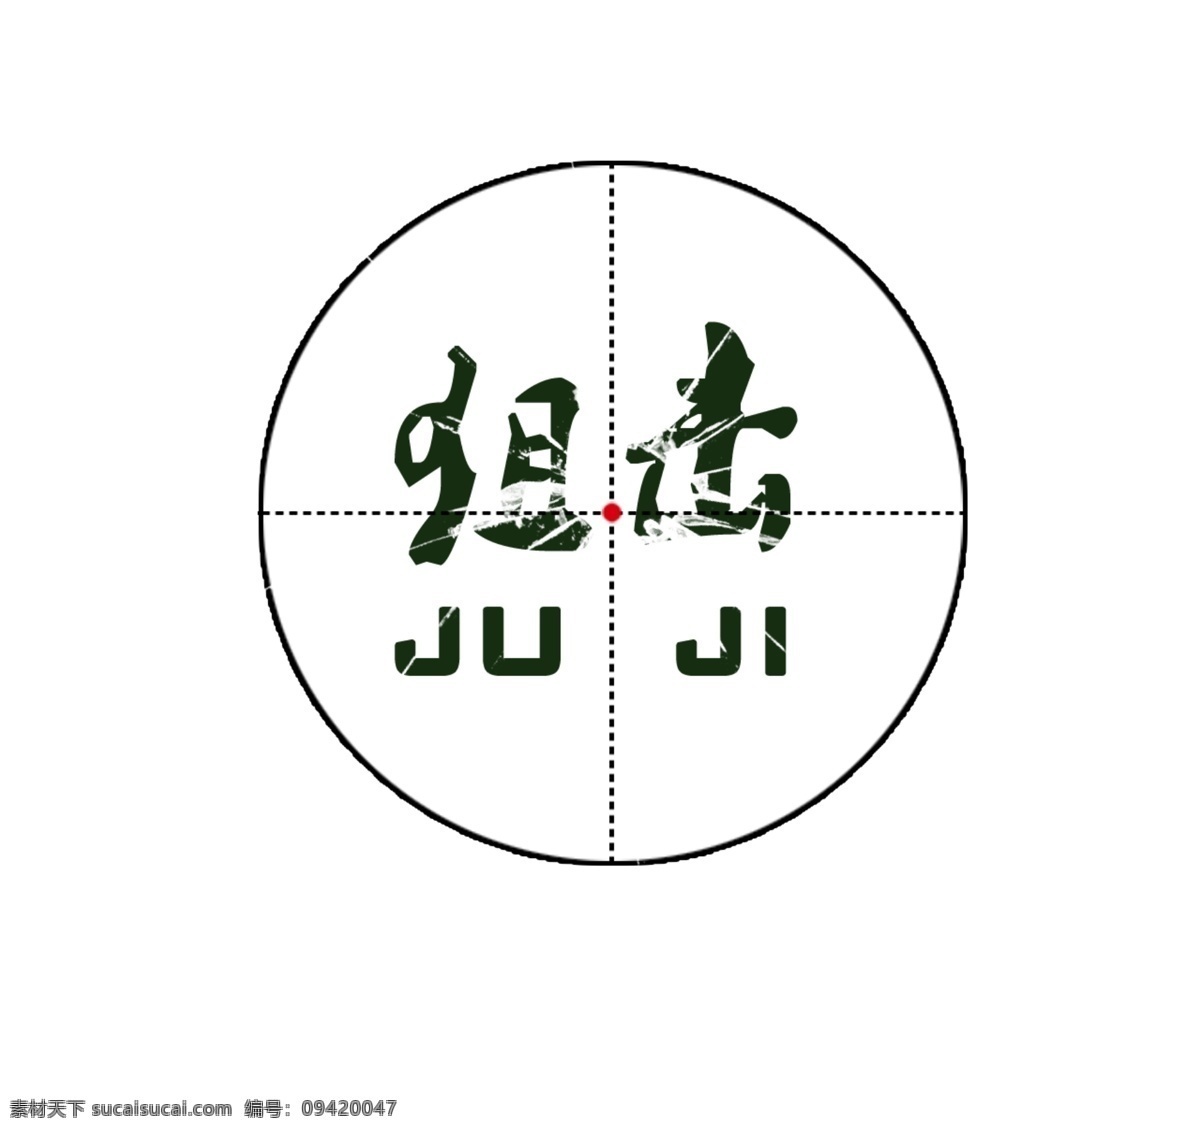 狙击 logo 标志设计 广告设计模板 十字 源文件 狙击logo juji 瞄准镜 psd源文件 logo设计